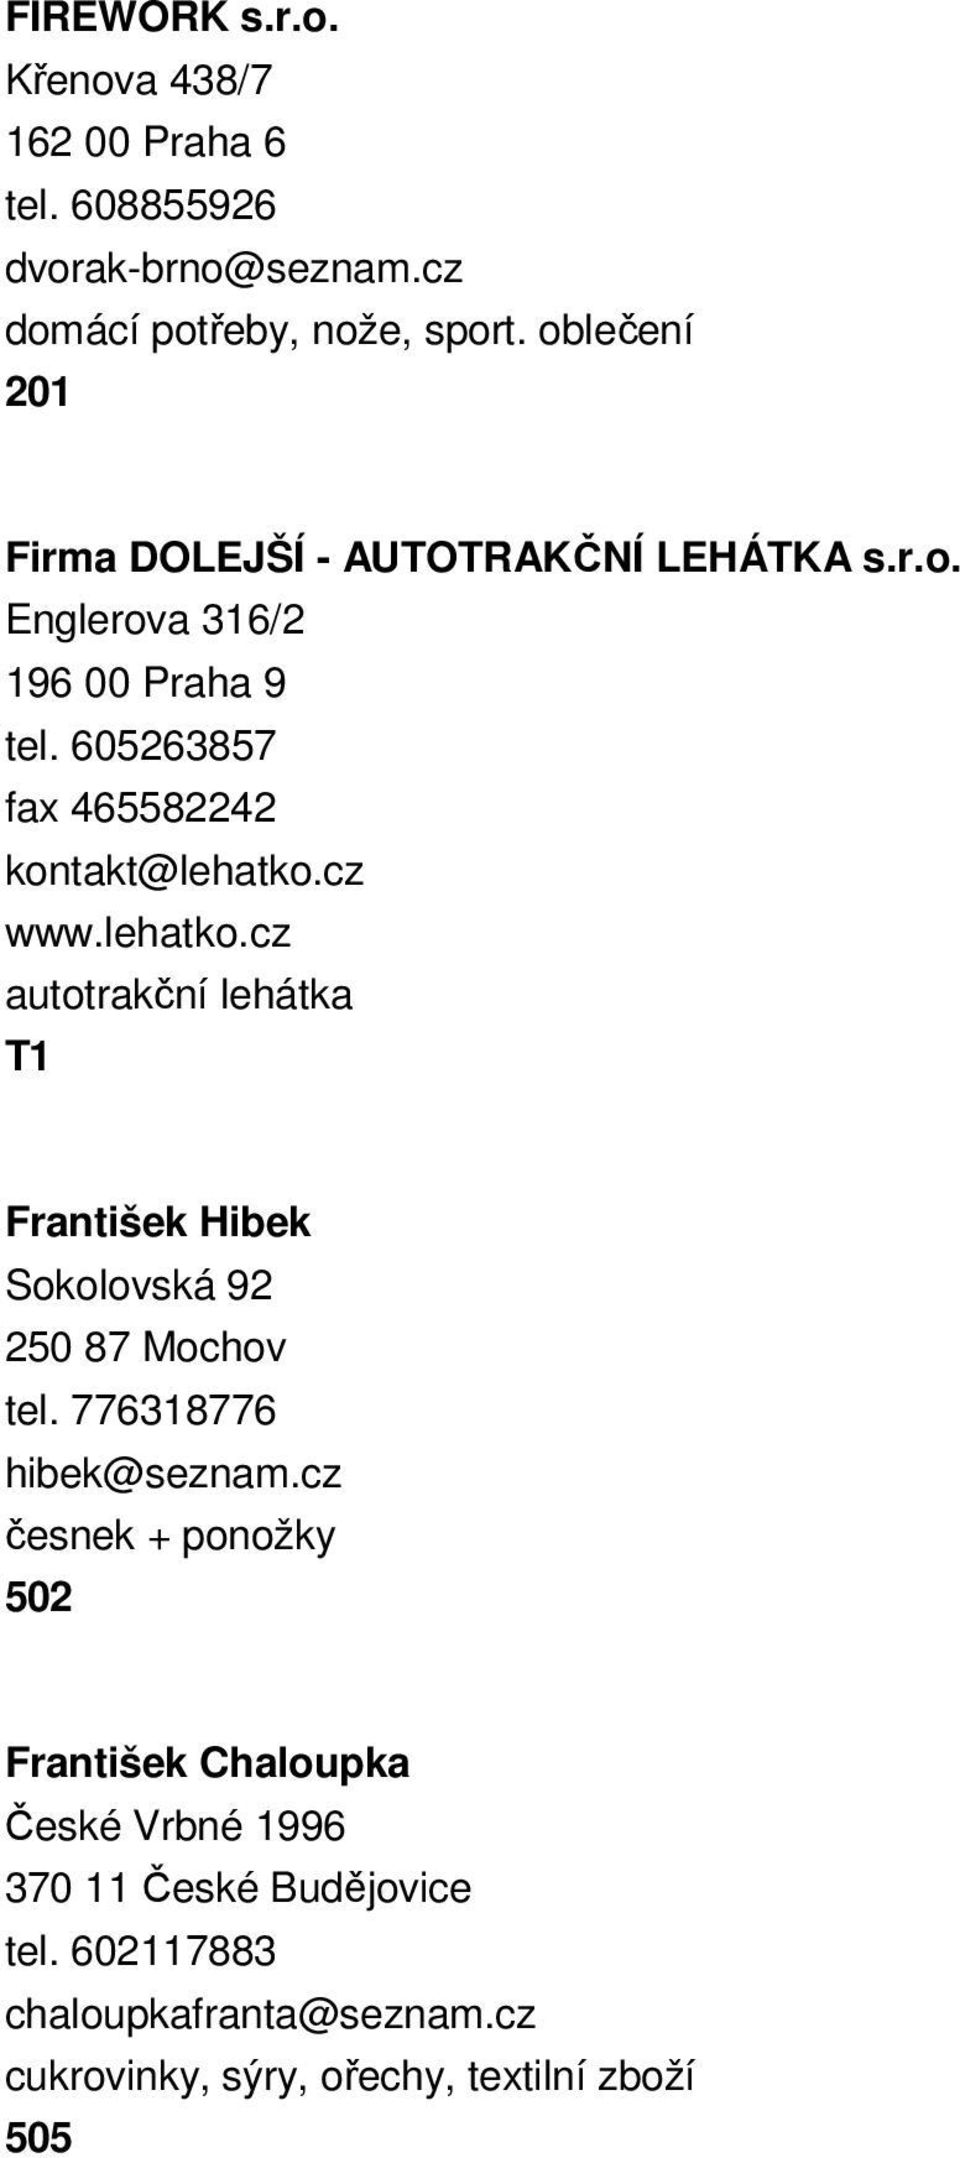 605263857 fax 465582242 kontakt@lehatko.cz www.lehatko.cz autotrakční lehátka František Hibek Sokolovská 92 250 87 Mochov tel.